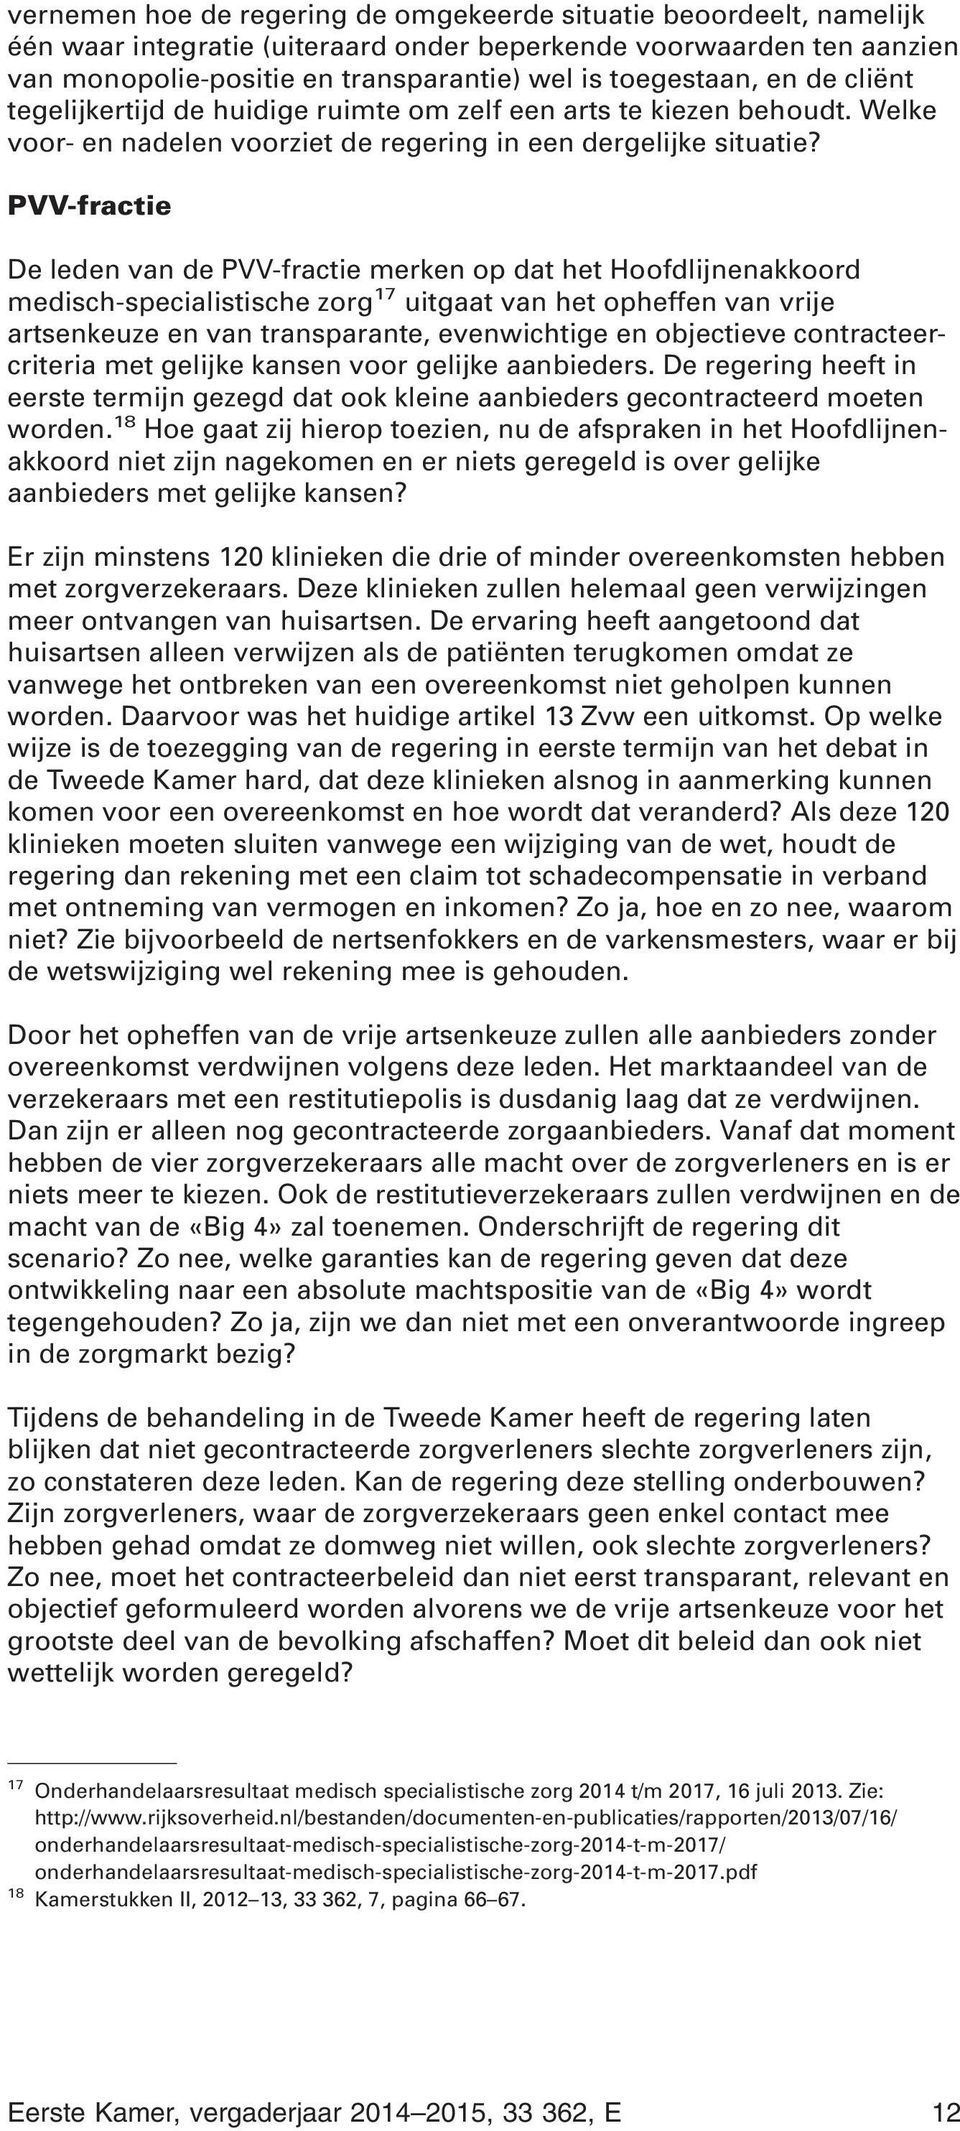 PVV-fractie De leden van de PVV-fractie merken op dat het Hoofdlijnenakkoord medisch-specialistische zorg 17 uitgaat van het opheffen van vrije artsenkeuze en van transparante, evenwichtige en